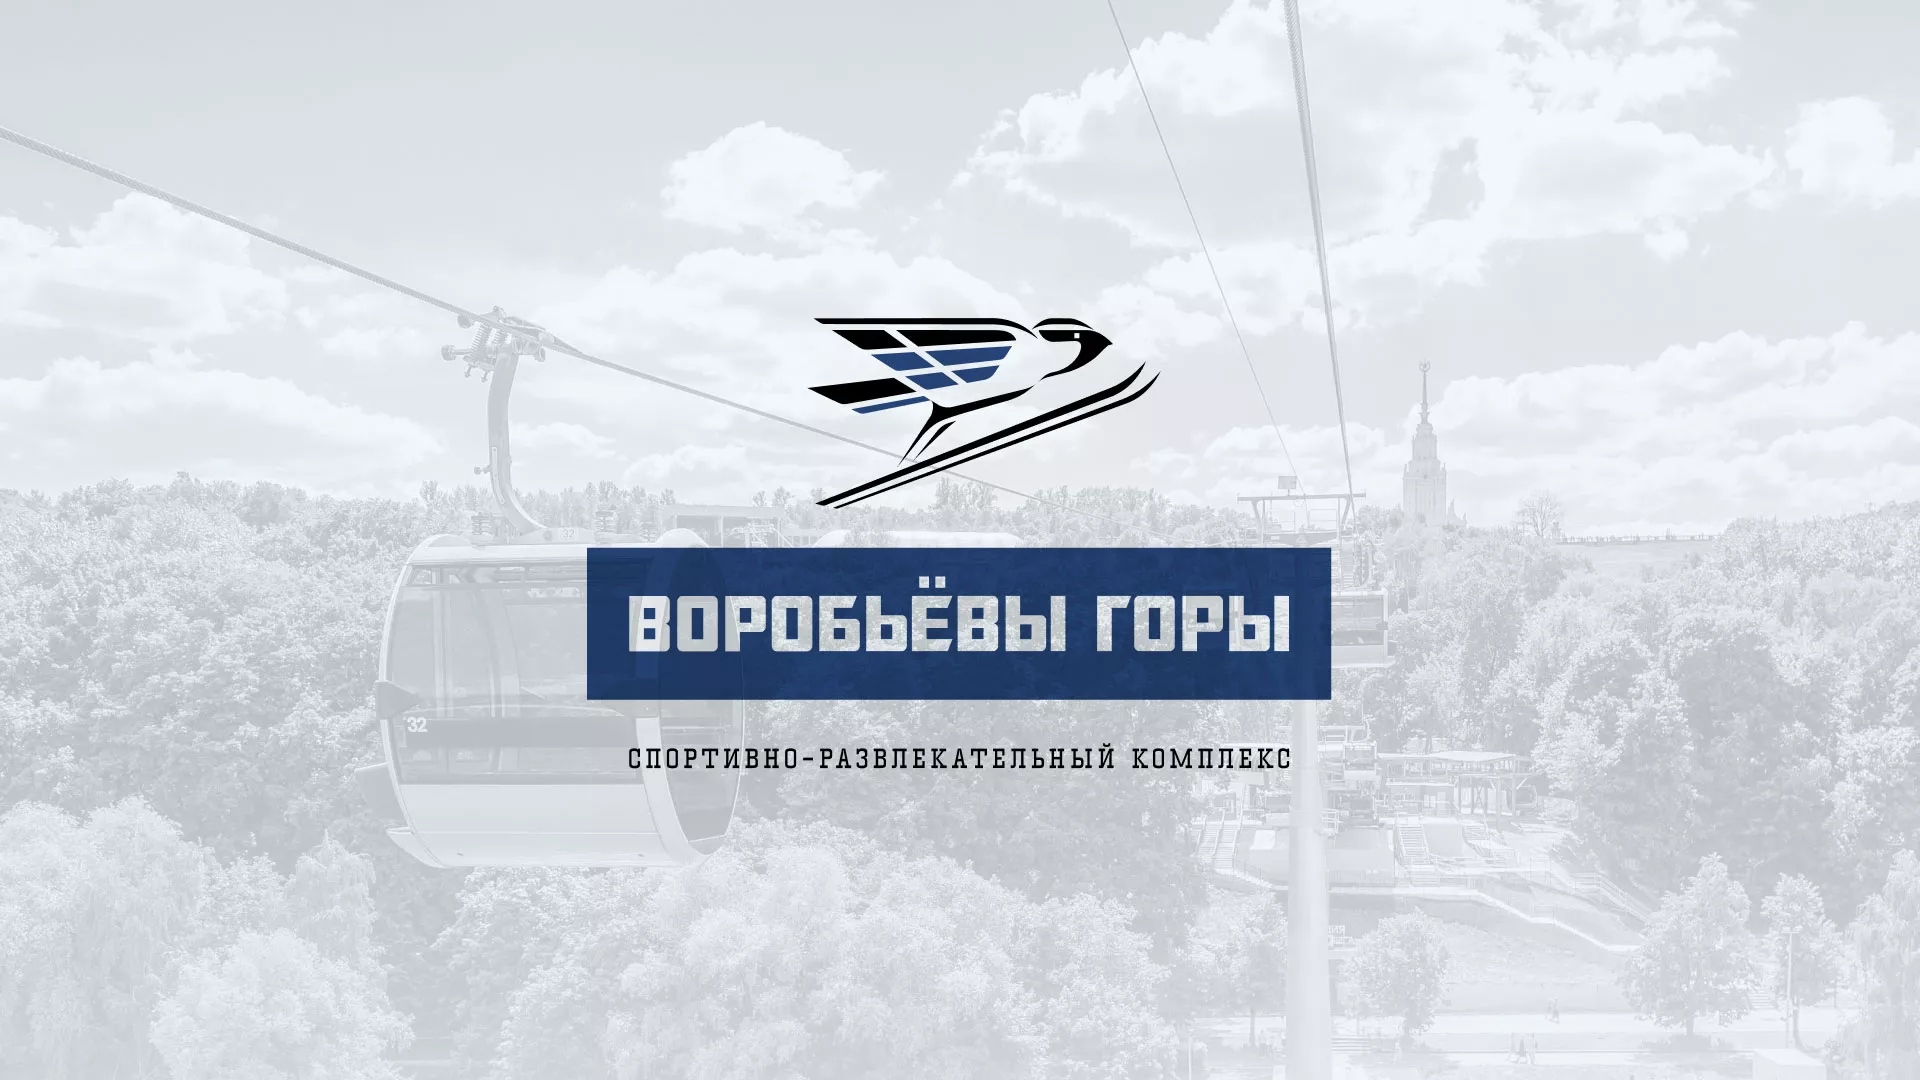 Разработка сайта в Электрогорске для спортивно-развлекательного комплекса «Воробьёвы горы»